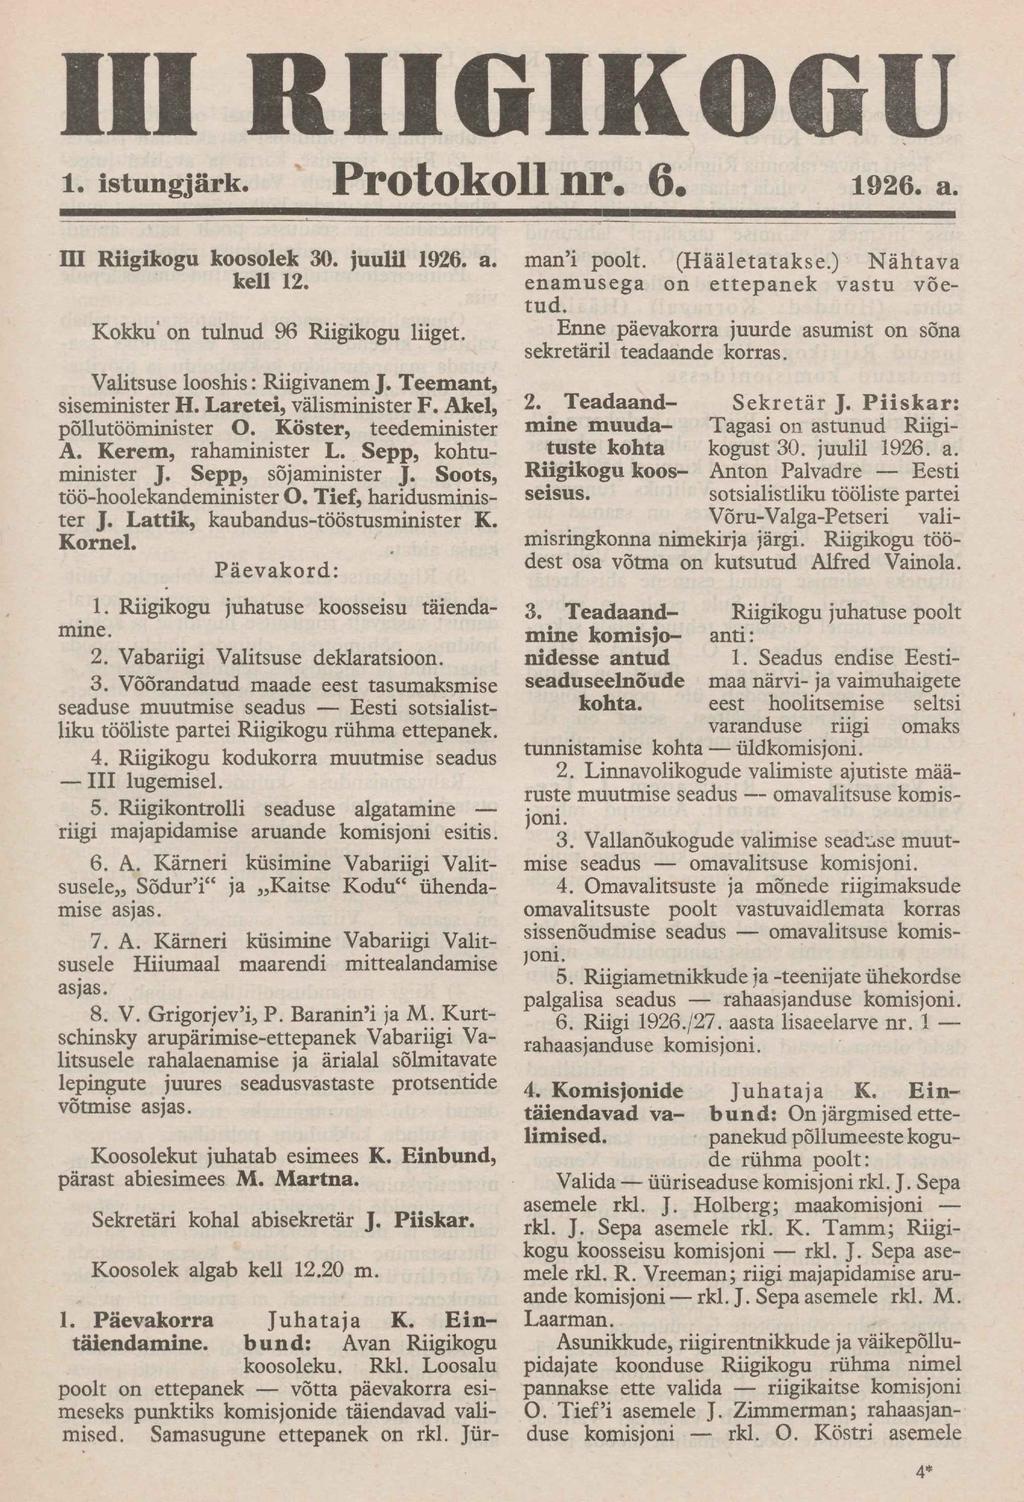 III RIIGIKOGU i. istungjärk. Protokoll nr. 6. 1926. a. III Riigikogu koosolek 30. juulil 1926. a. kell 12. Kokku' on tulnud 96 Riigikogu liiget. Valitsuse looshis: Riigivanem J.